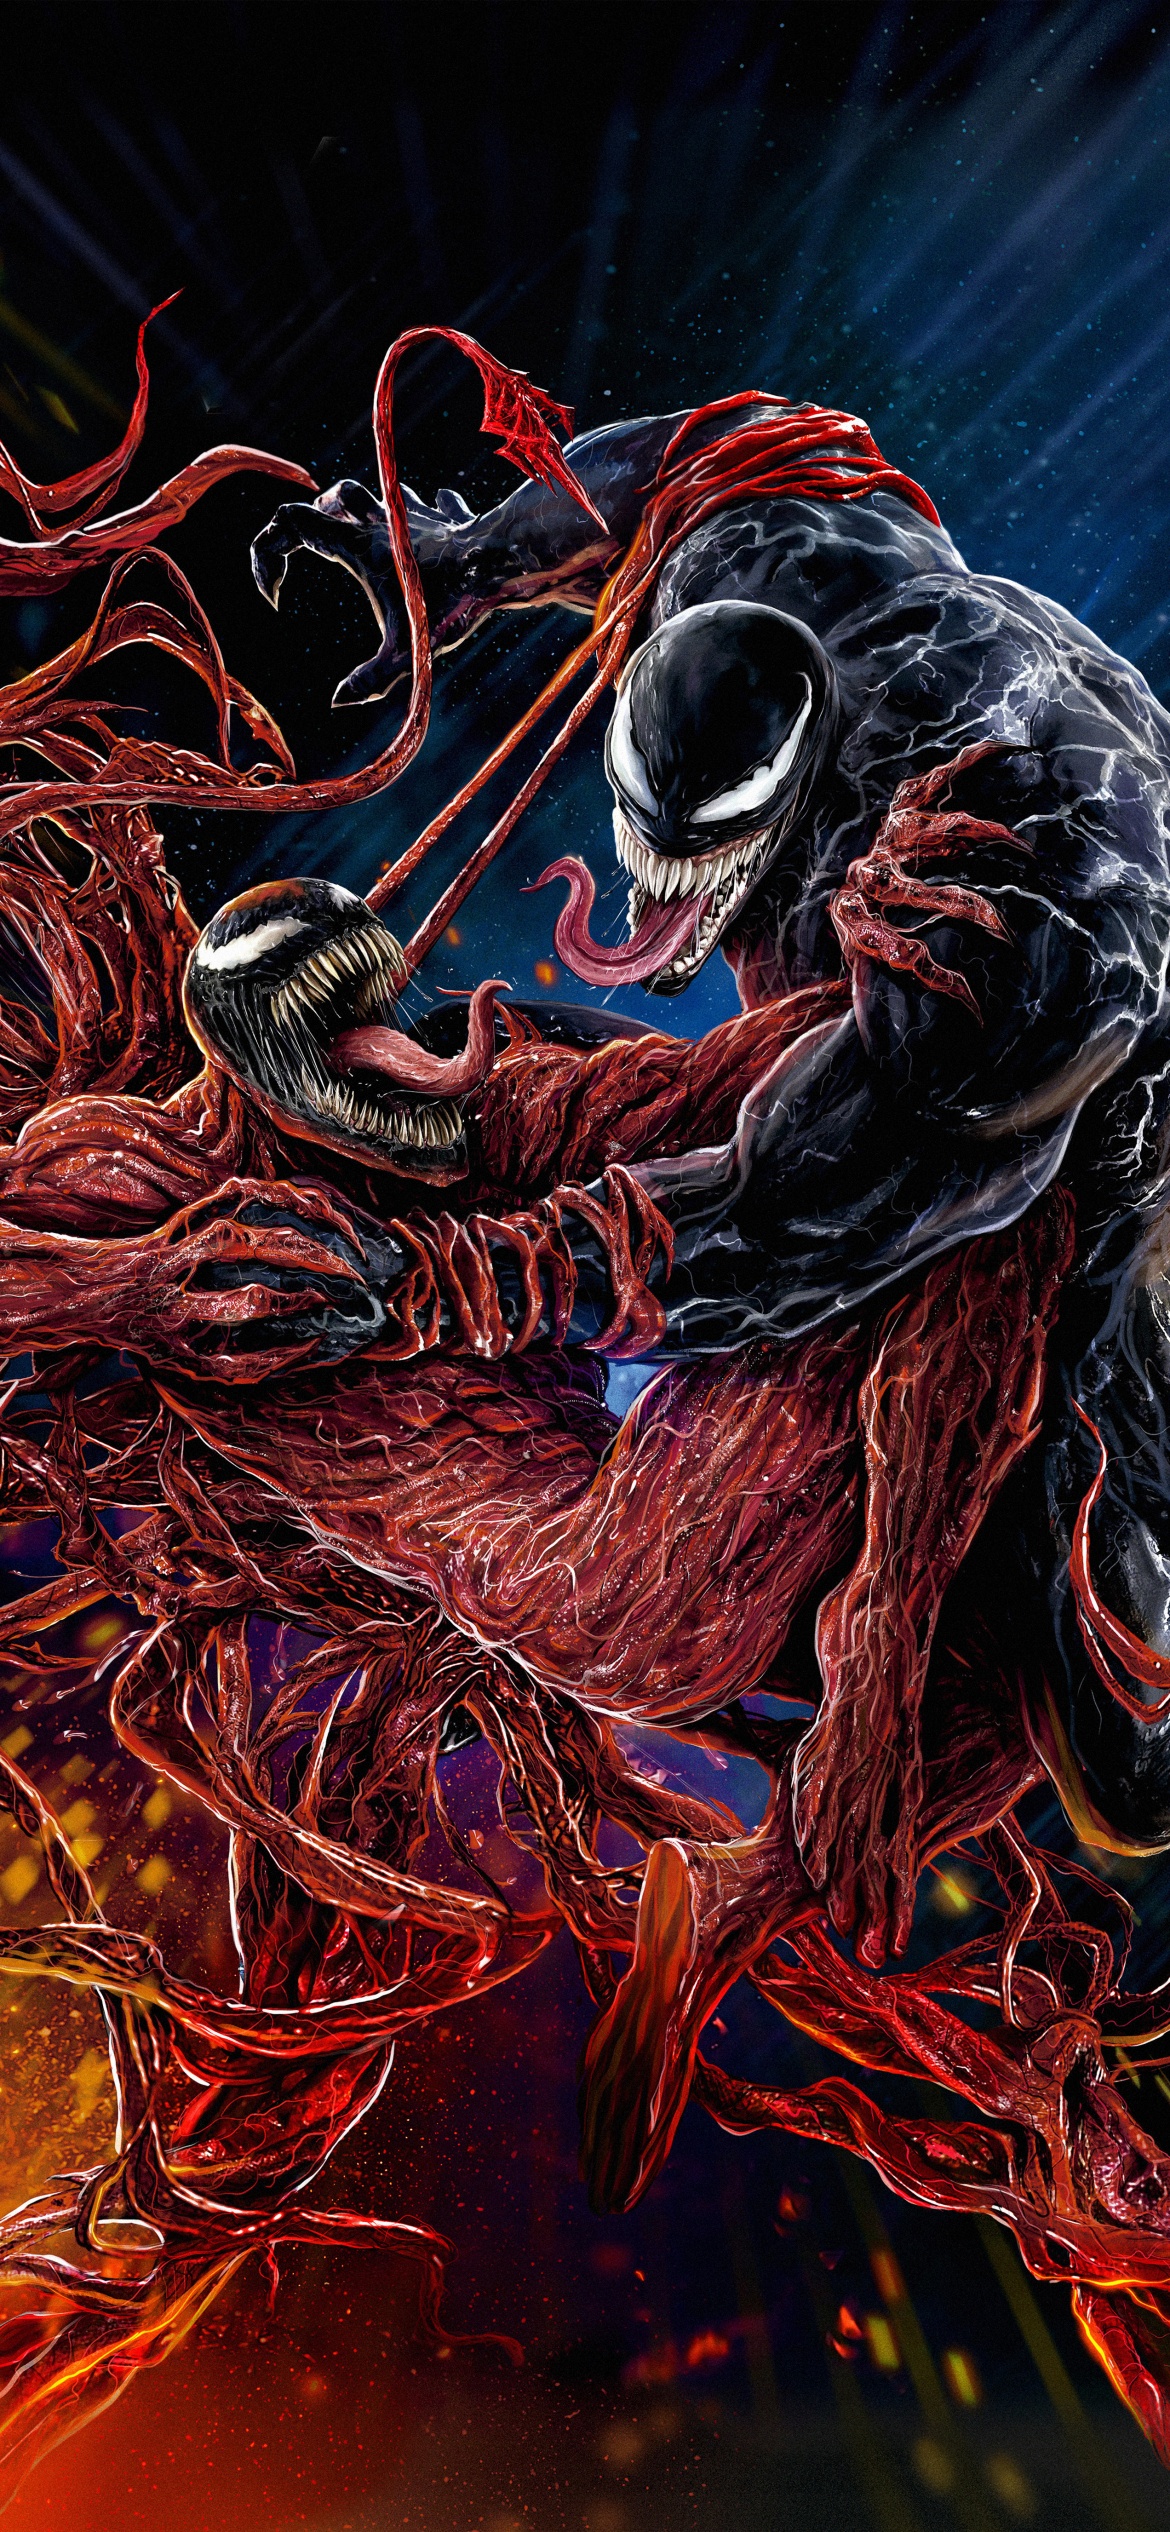 Venom 2: Bạn đã sẵn sàng để cùng tiếp tục những thử thách đầy kịch tính trong bộ phim bom tấn Venom 2? Theo dõi những màn hành động nghẹt thở và chiến đấu chống lại những kẻ thù tàn ác trong bộ phim này!